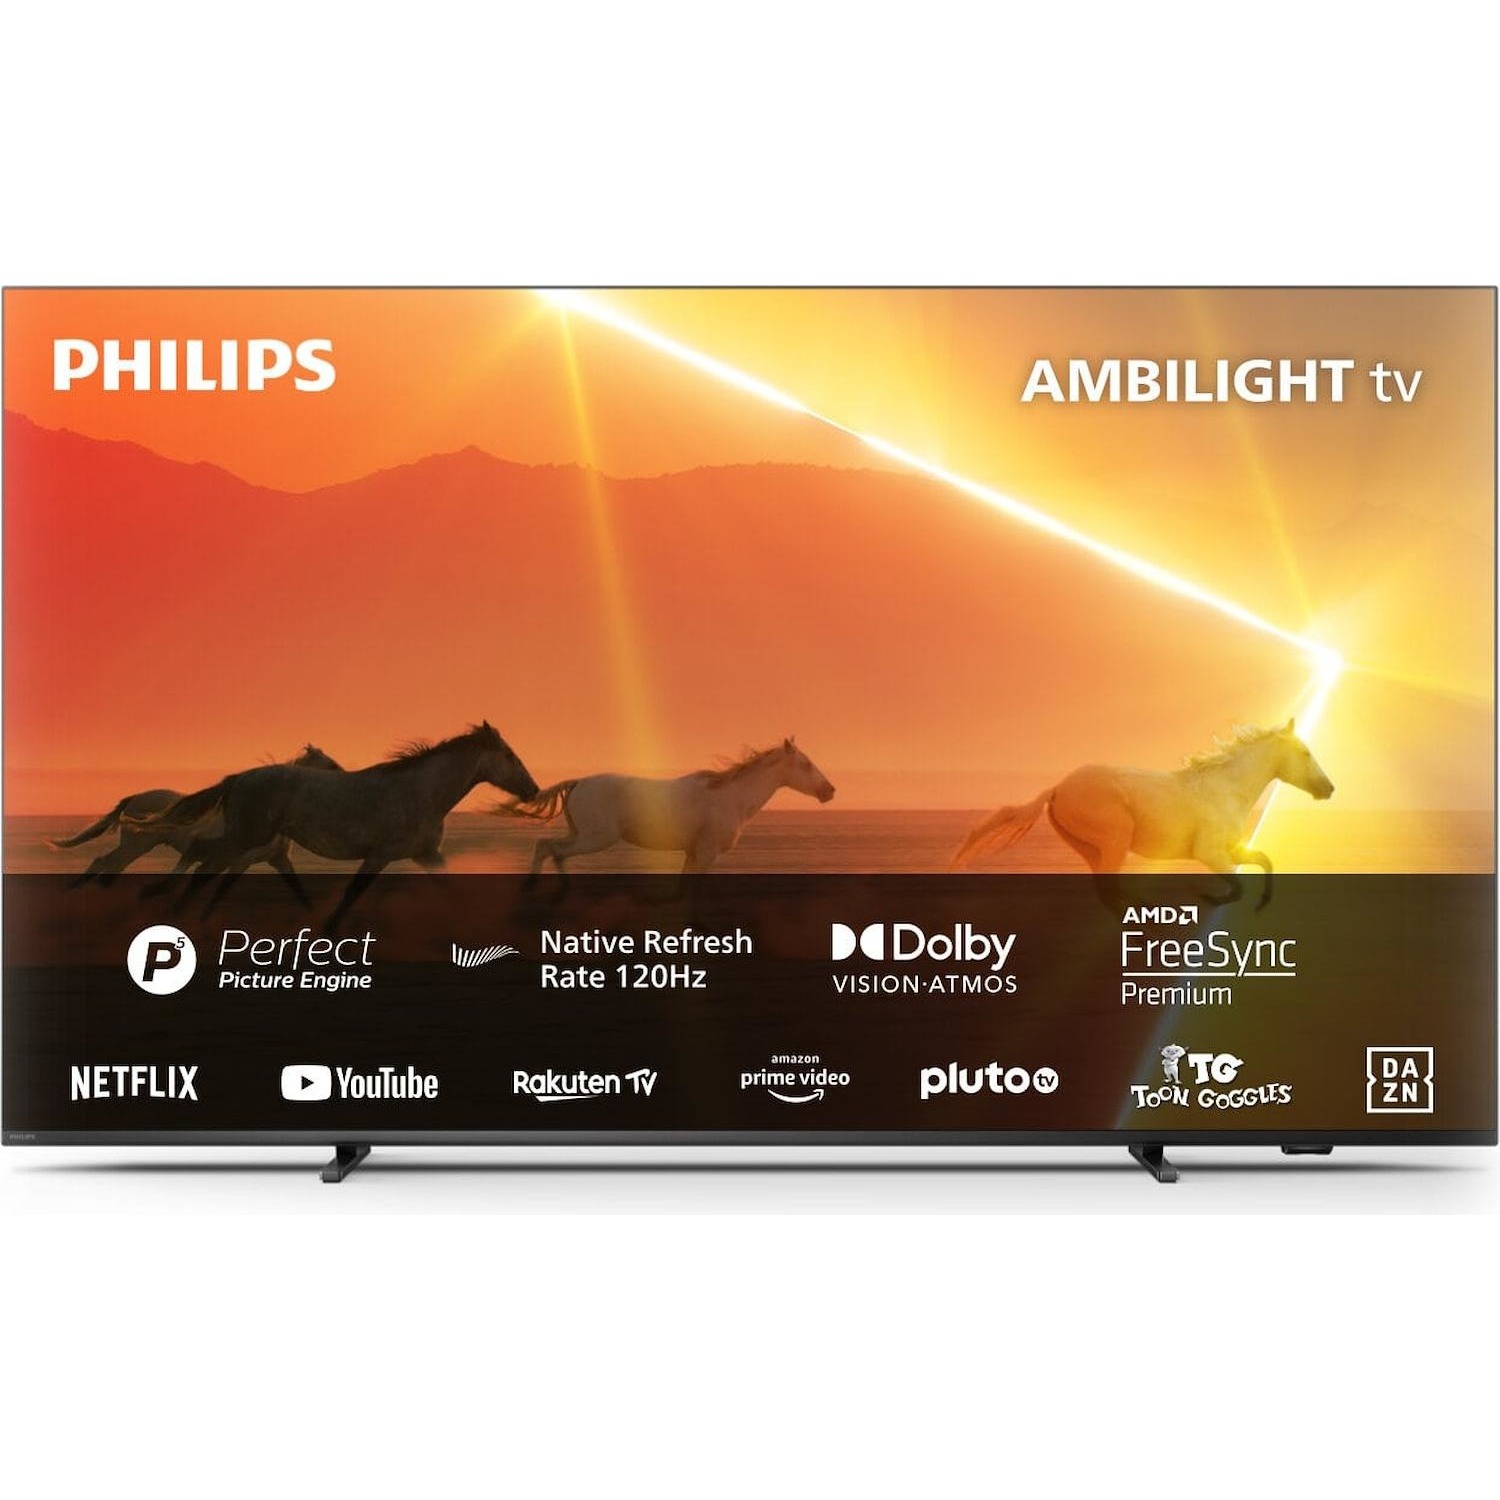 Immagine per TV Mini LED 4K UHD Android Smart Philips 75PML9008 Ambilight da DIMOStore